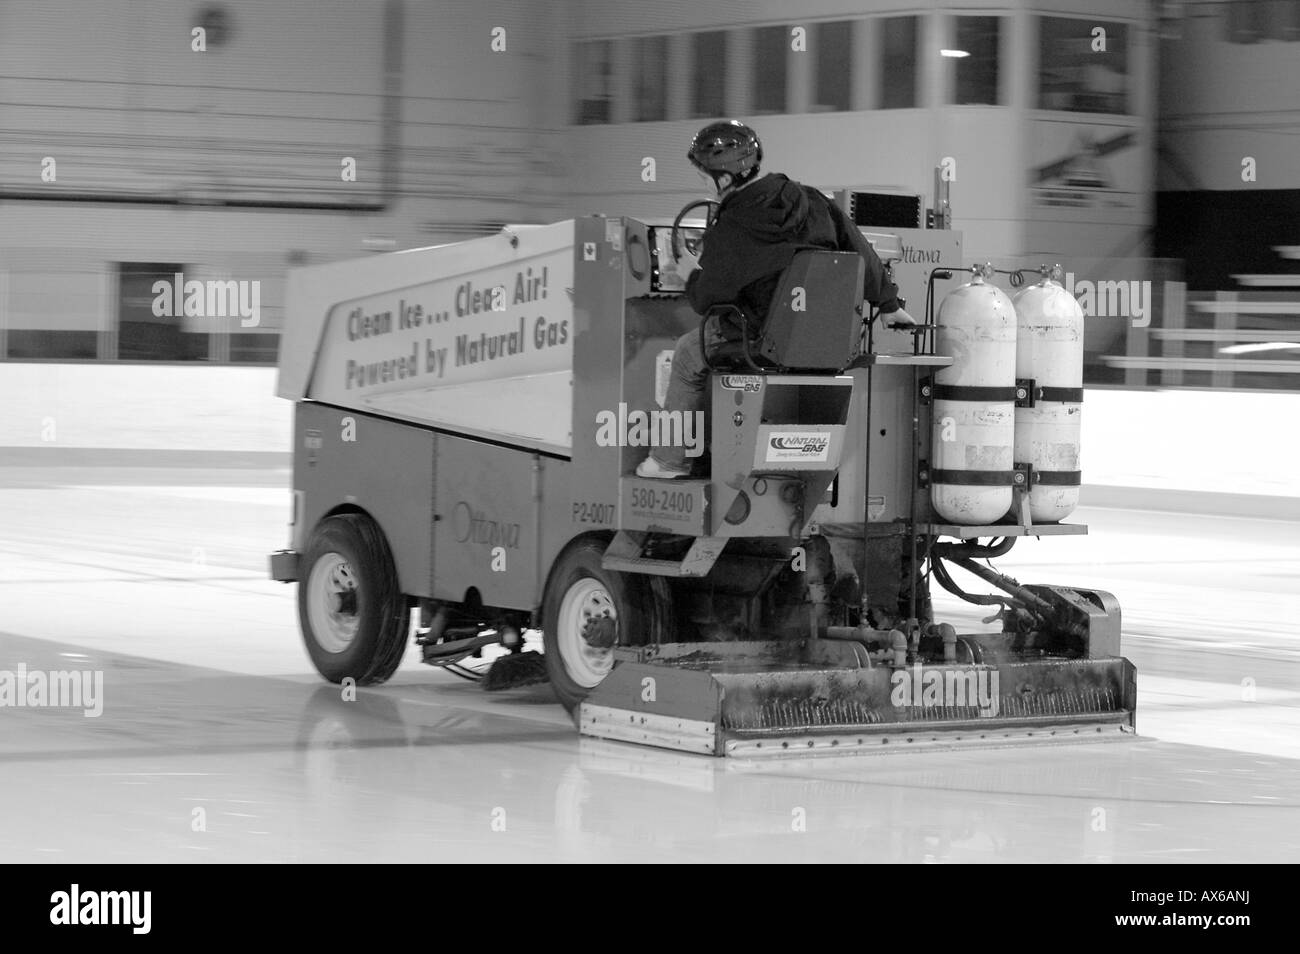 Un nettoyage de glace Zamboni prend ses tours sur une patinoire Banque D'Images